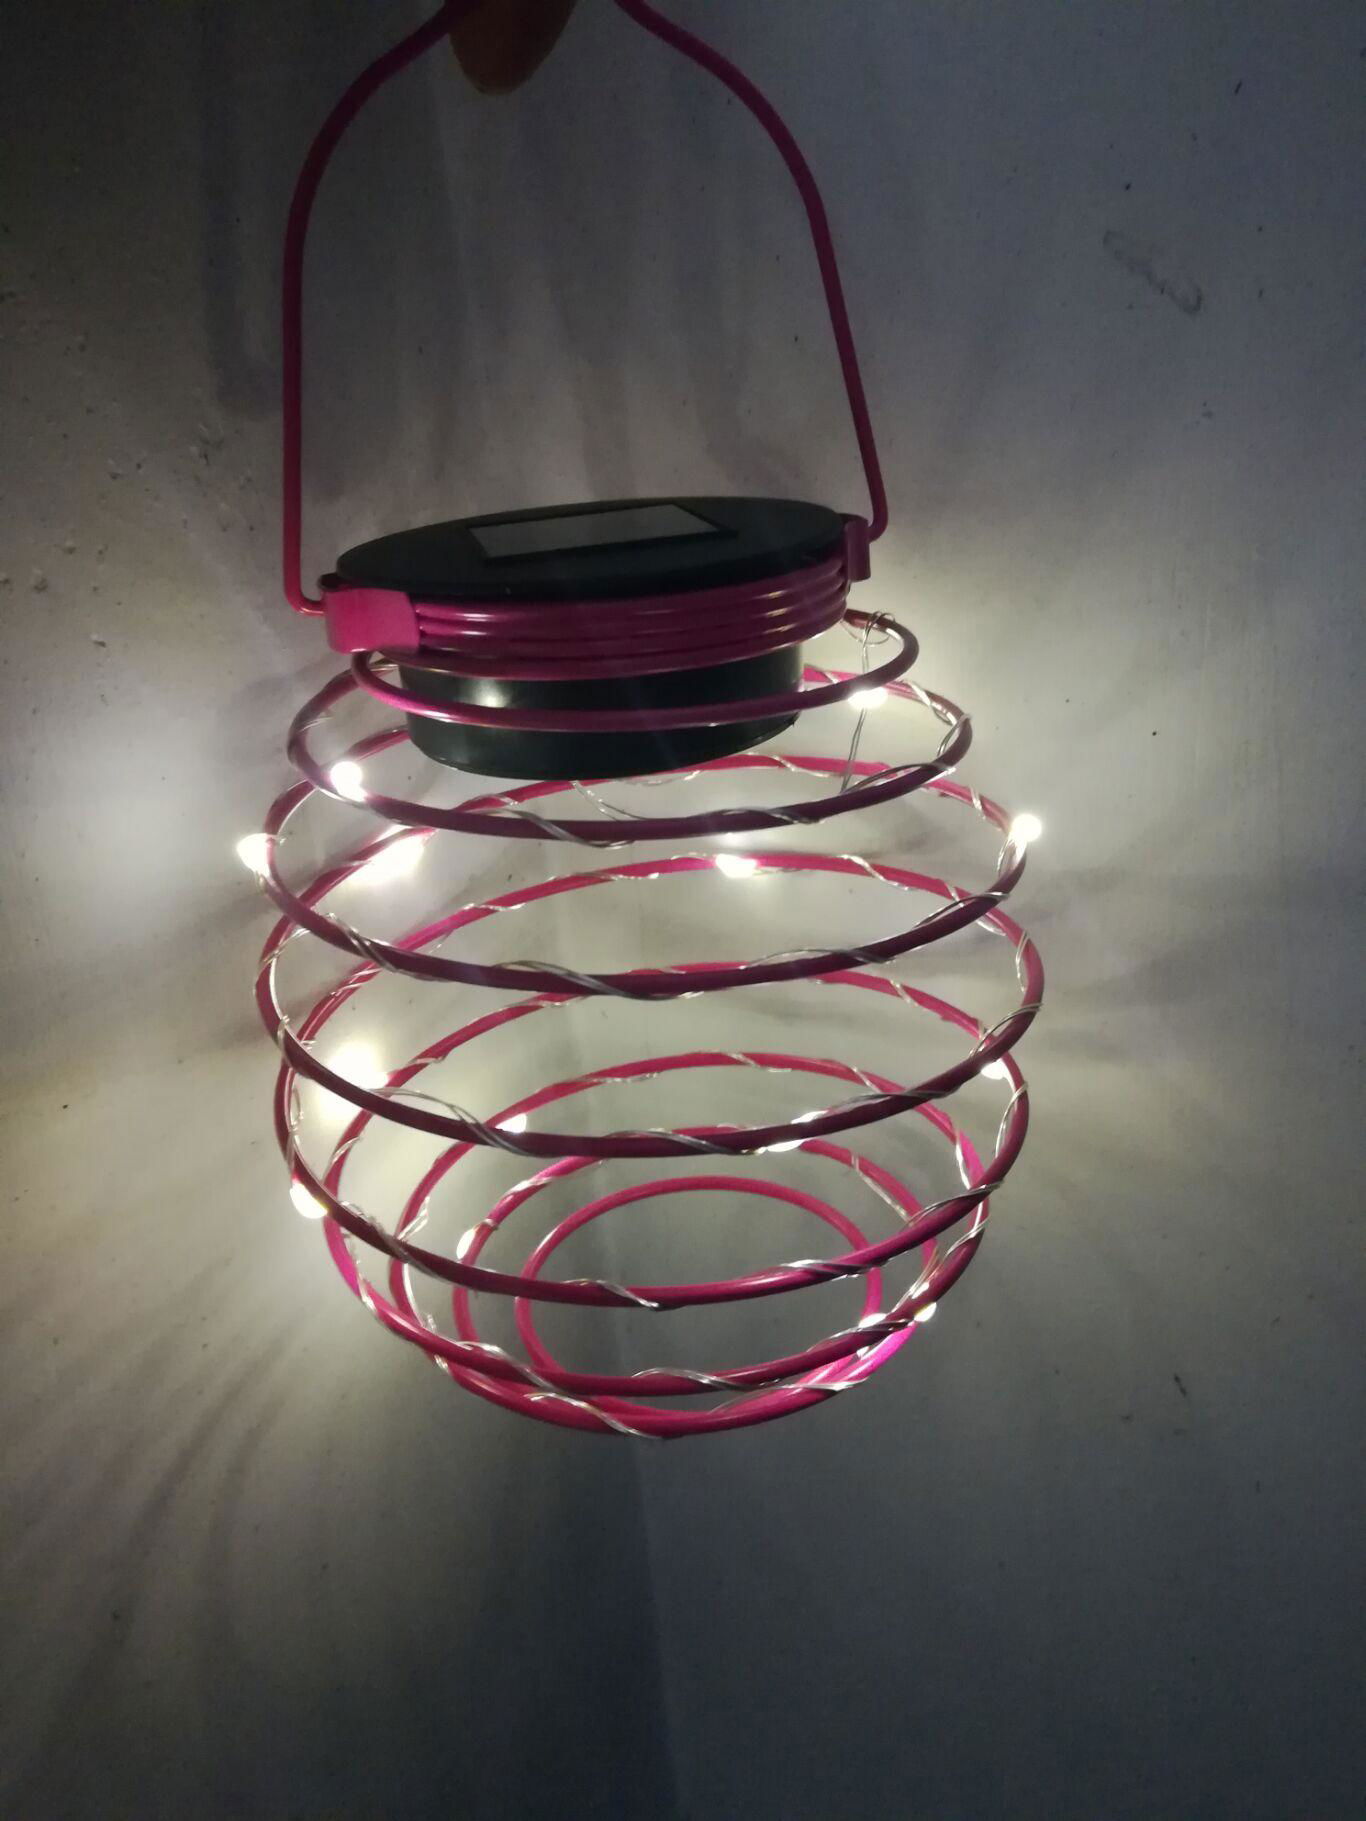 LED solar mini  lantern